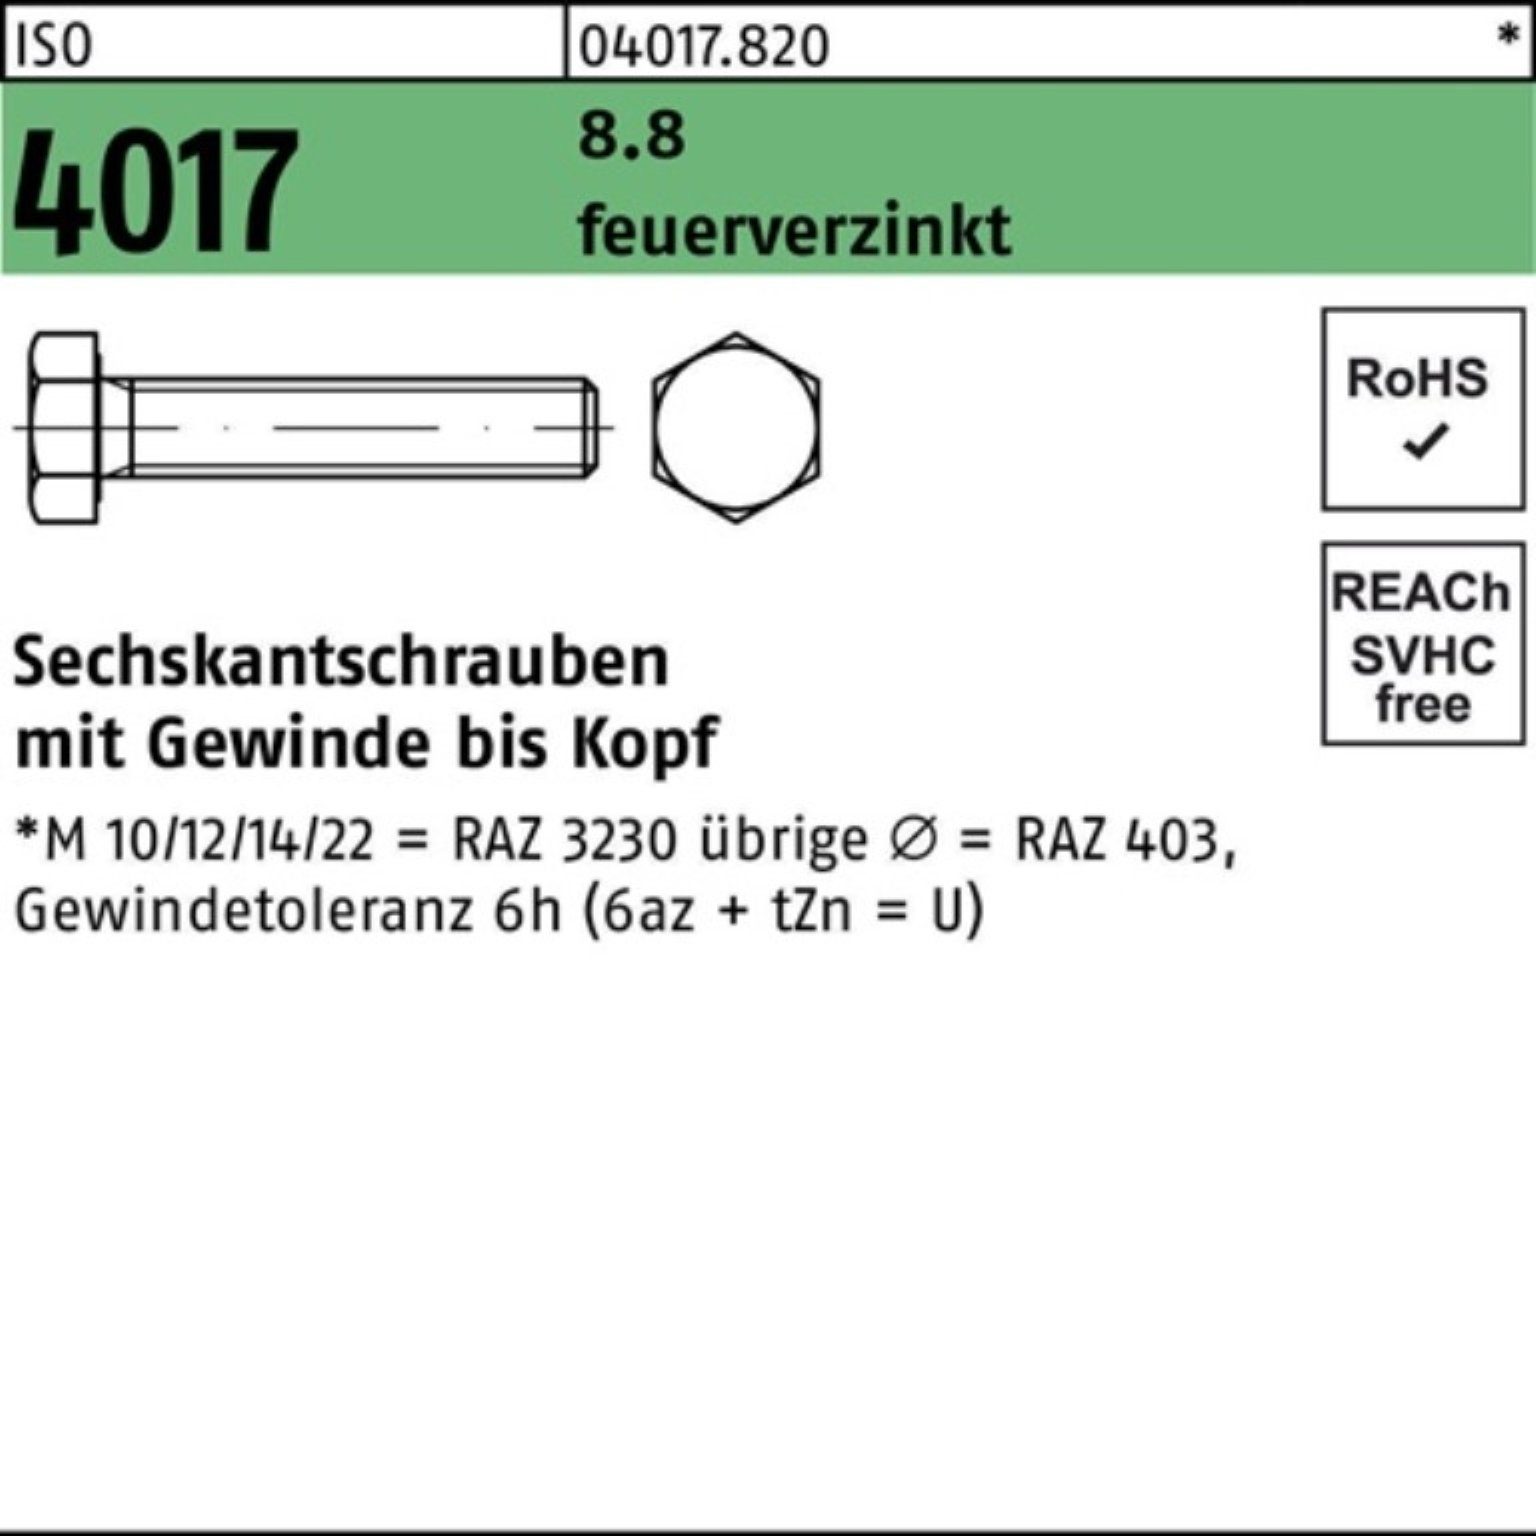 Bufab Sechskantschraube 100er Pack Sechskantschraube ISO 4017 VG M16x 55 8.8 feuerverz. 50 St